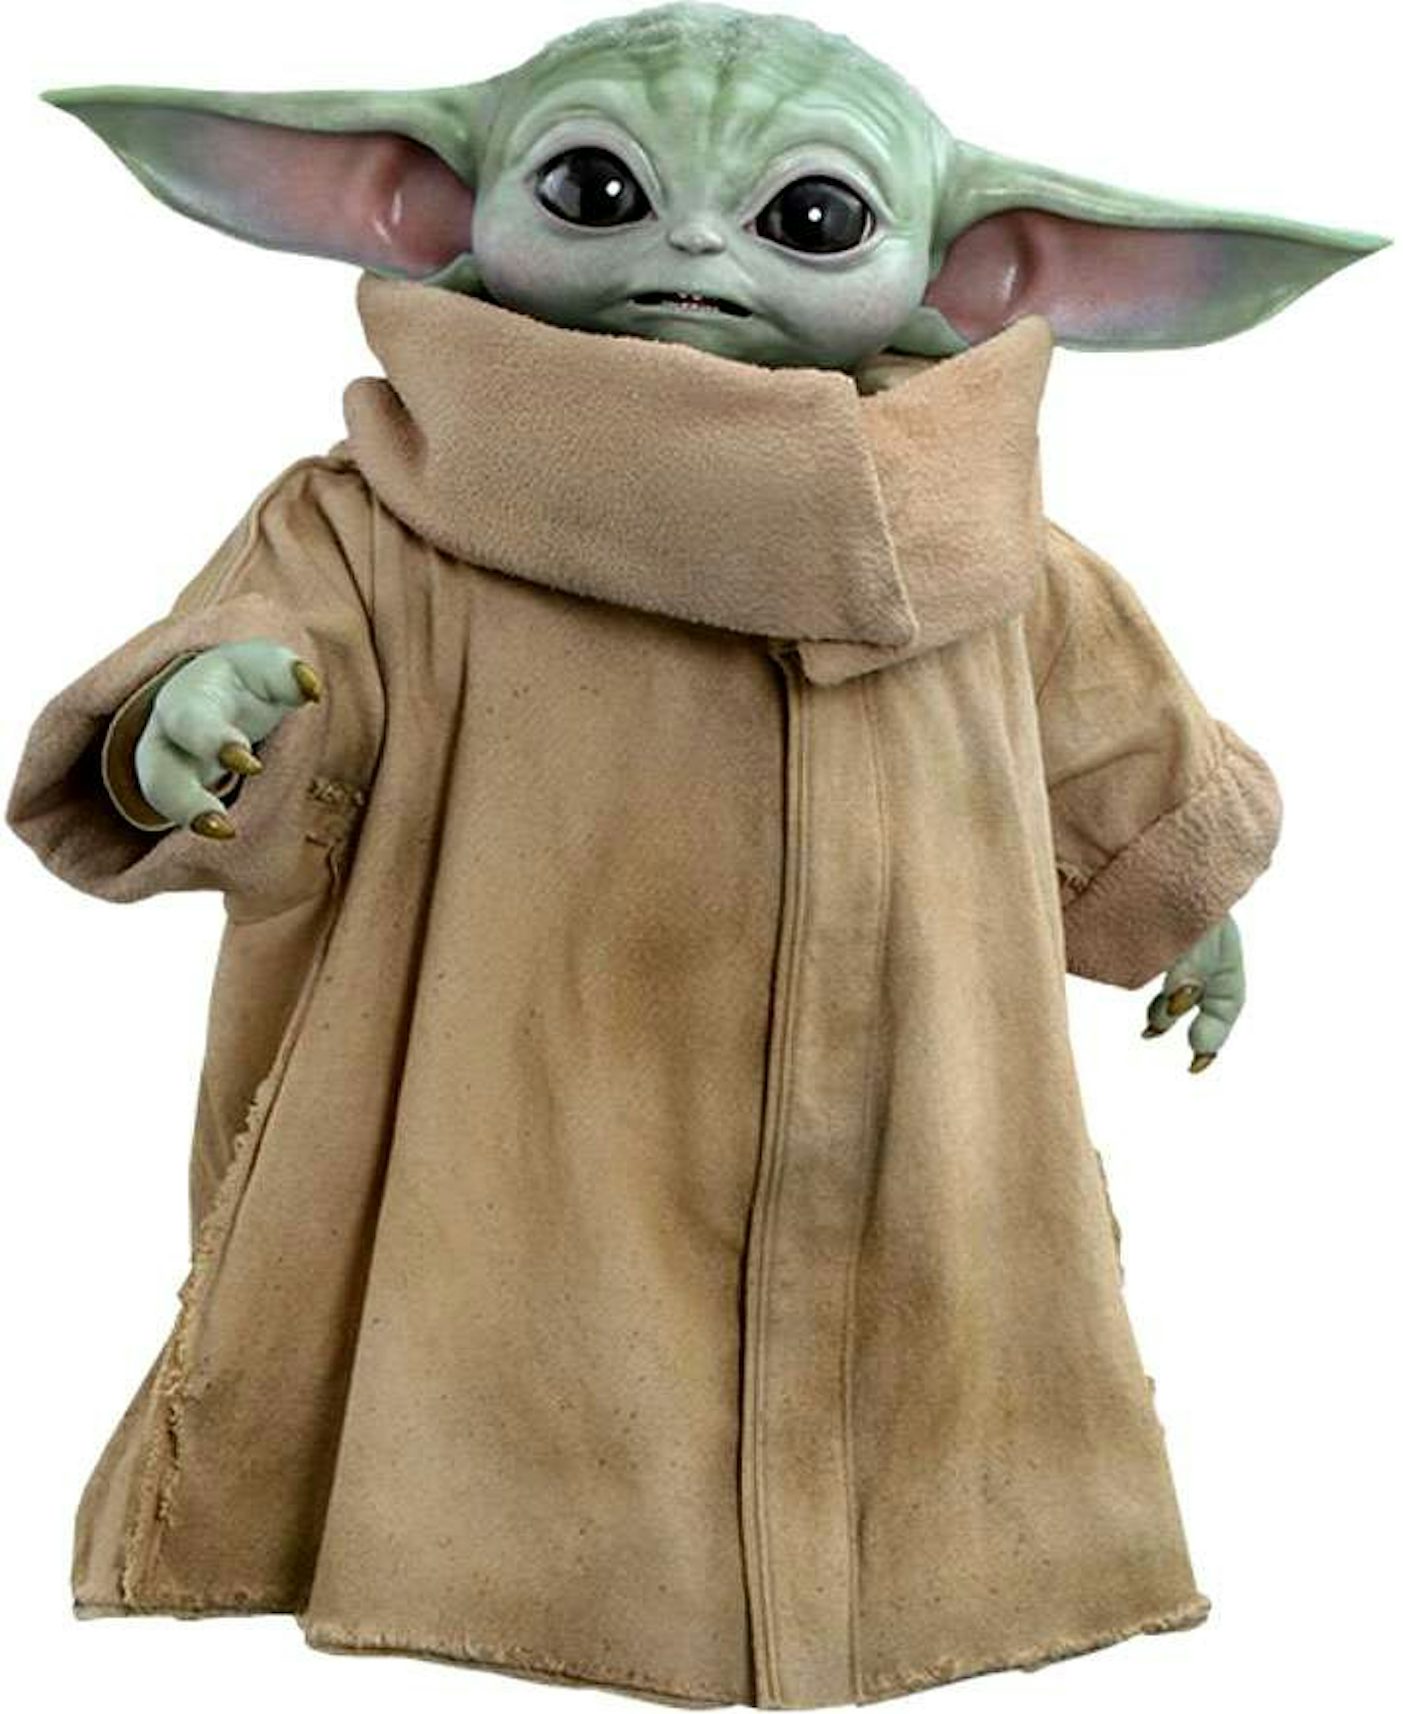 Grogu / Baby Yoda Costume